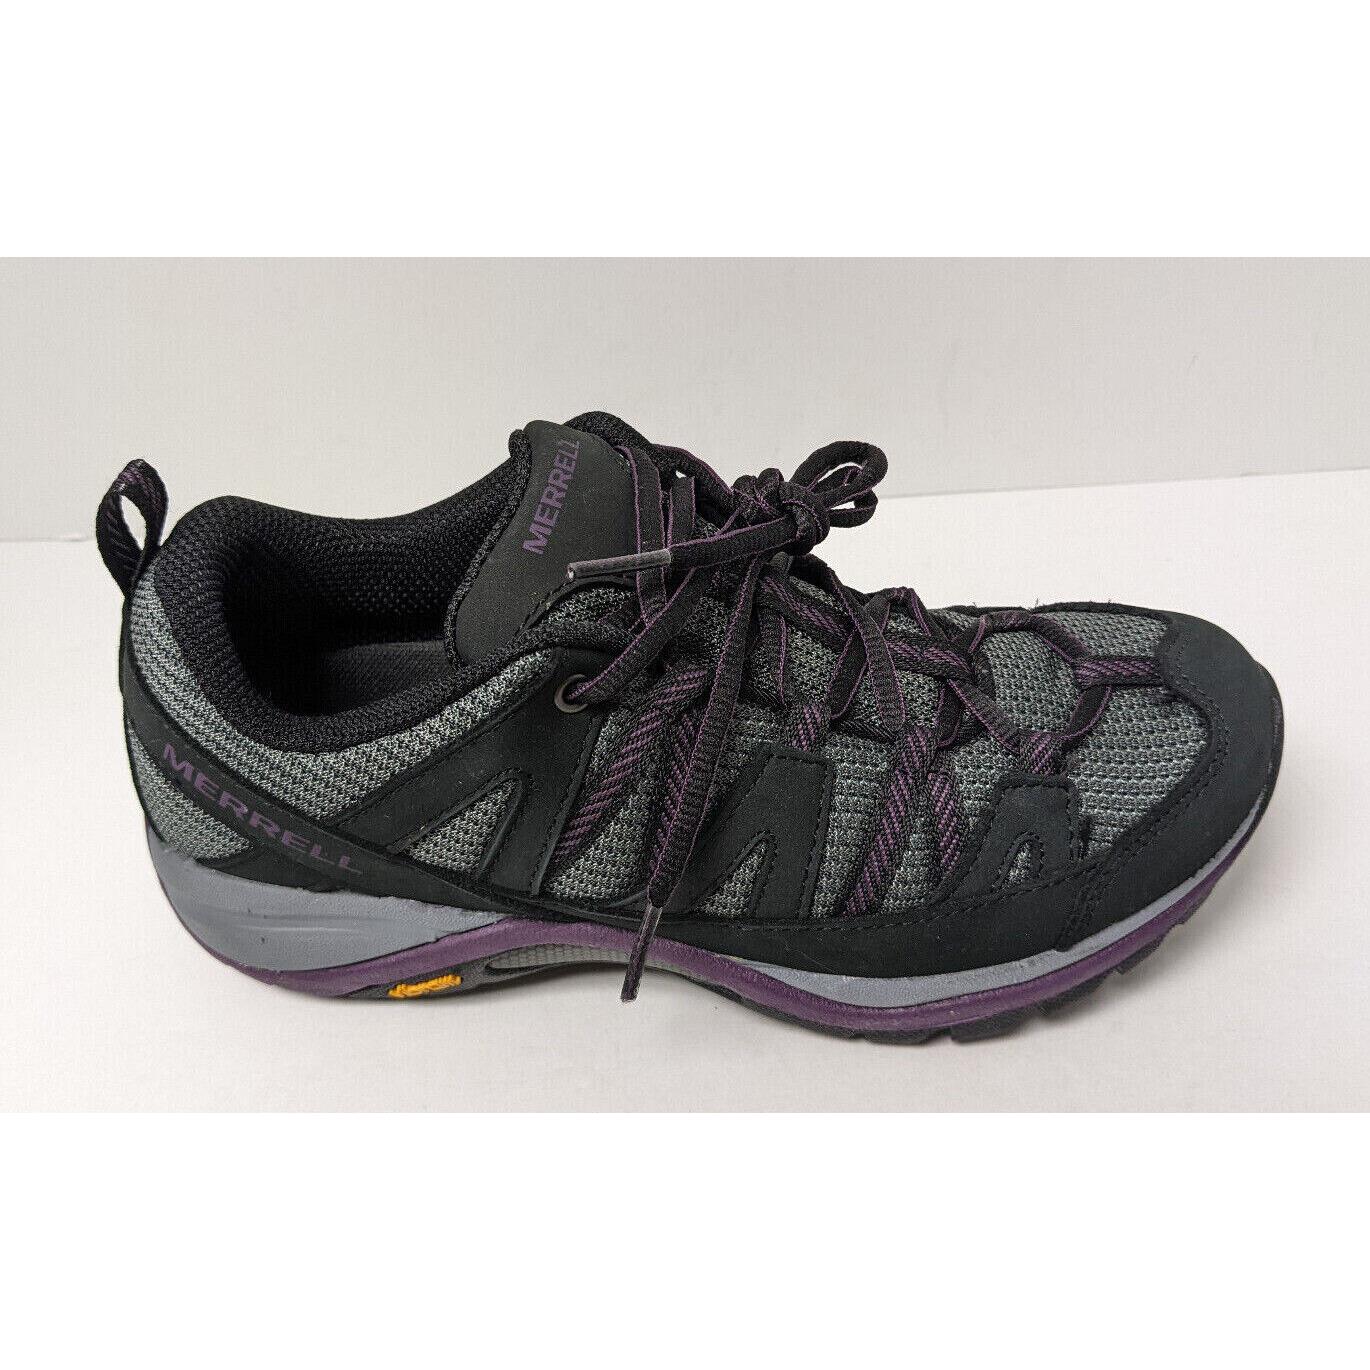 Merrell Siren Sport 3 Waterproof Hiking Shoes Black/blackberry Women`s 7 M